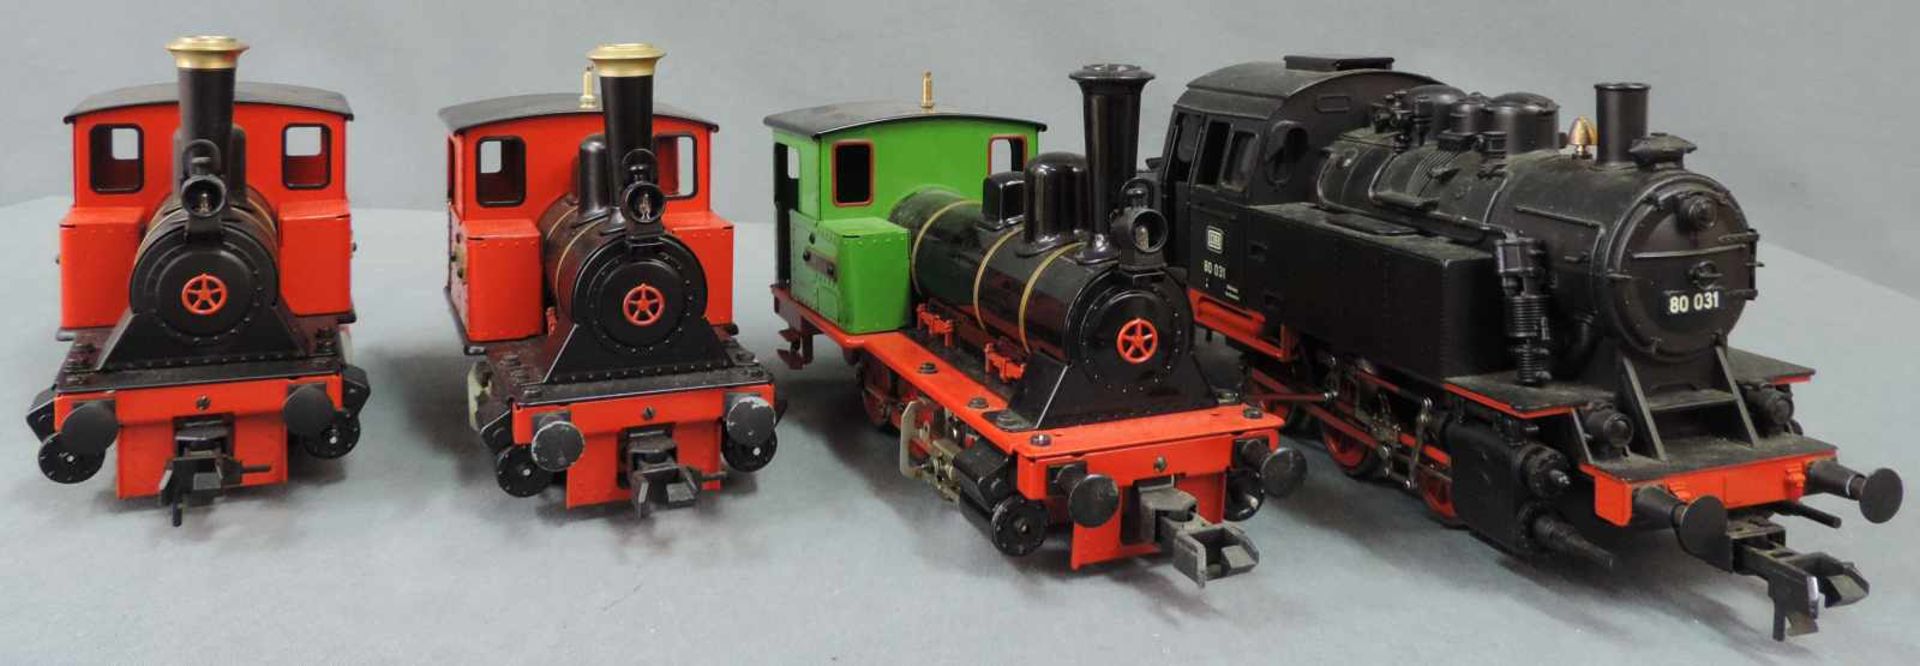 Vier Lokomotiven, Märklin, Modelleisenbahnen. 2x Modell "Emma", 1x "BR 80031", 1x Lokomotive "